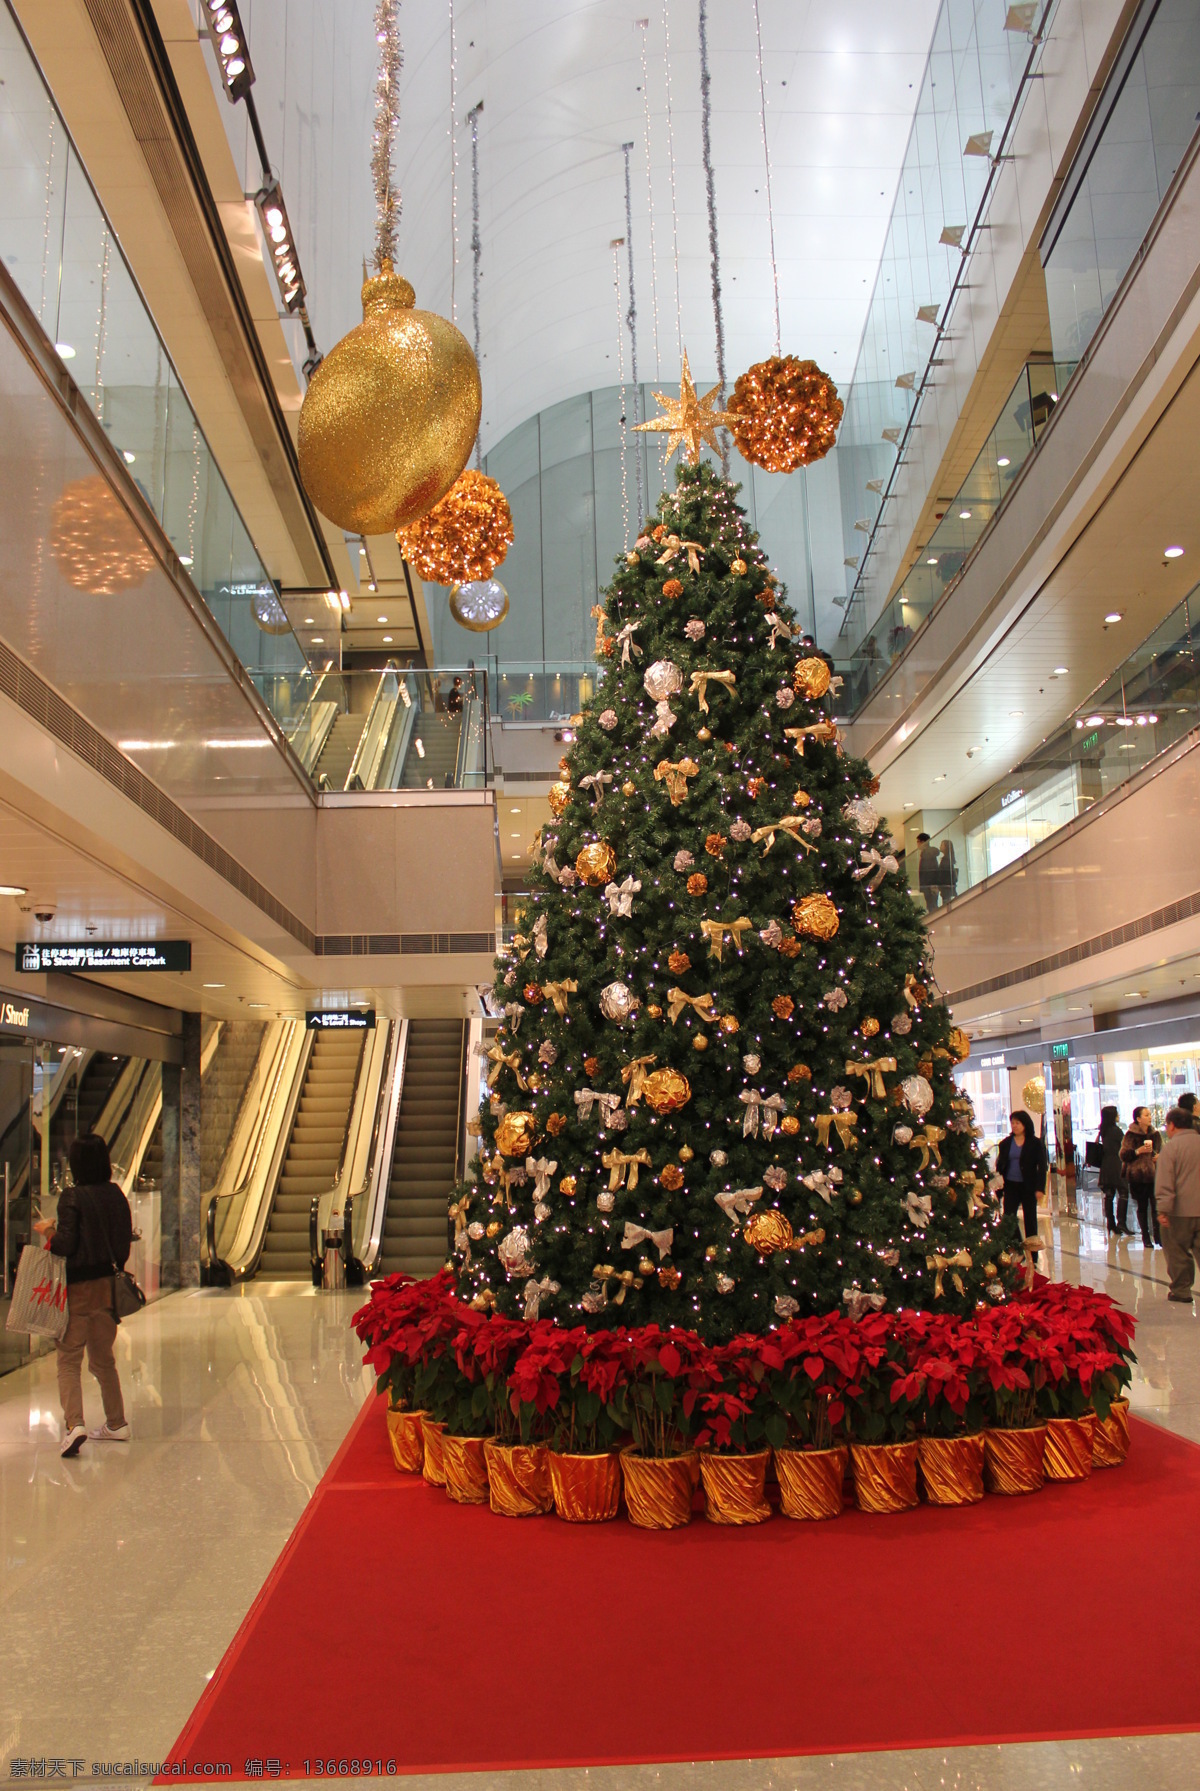 香港圣诞布置 香港商场 香港购物 香港新年布置 新年布置 新年美陈 圣诞美陈 节日庆祝 文化艺术